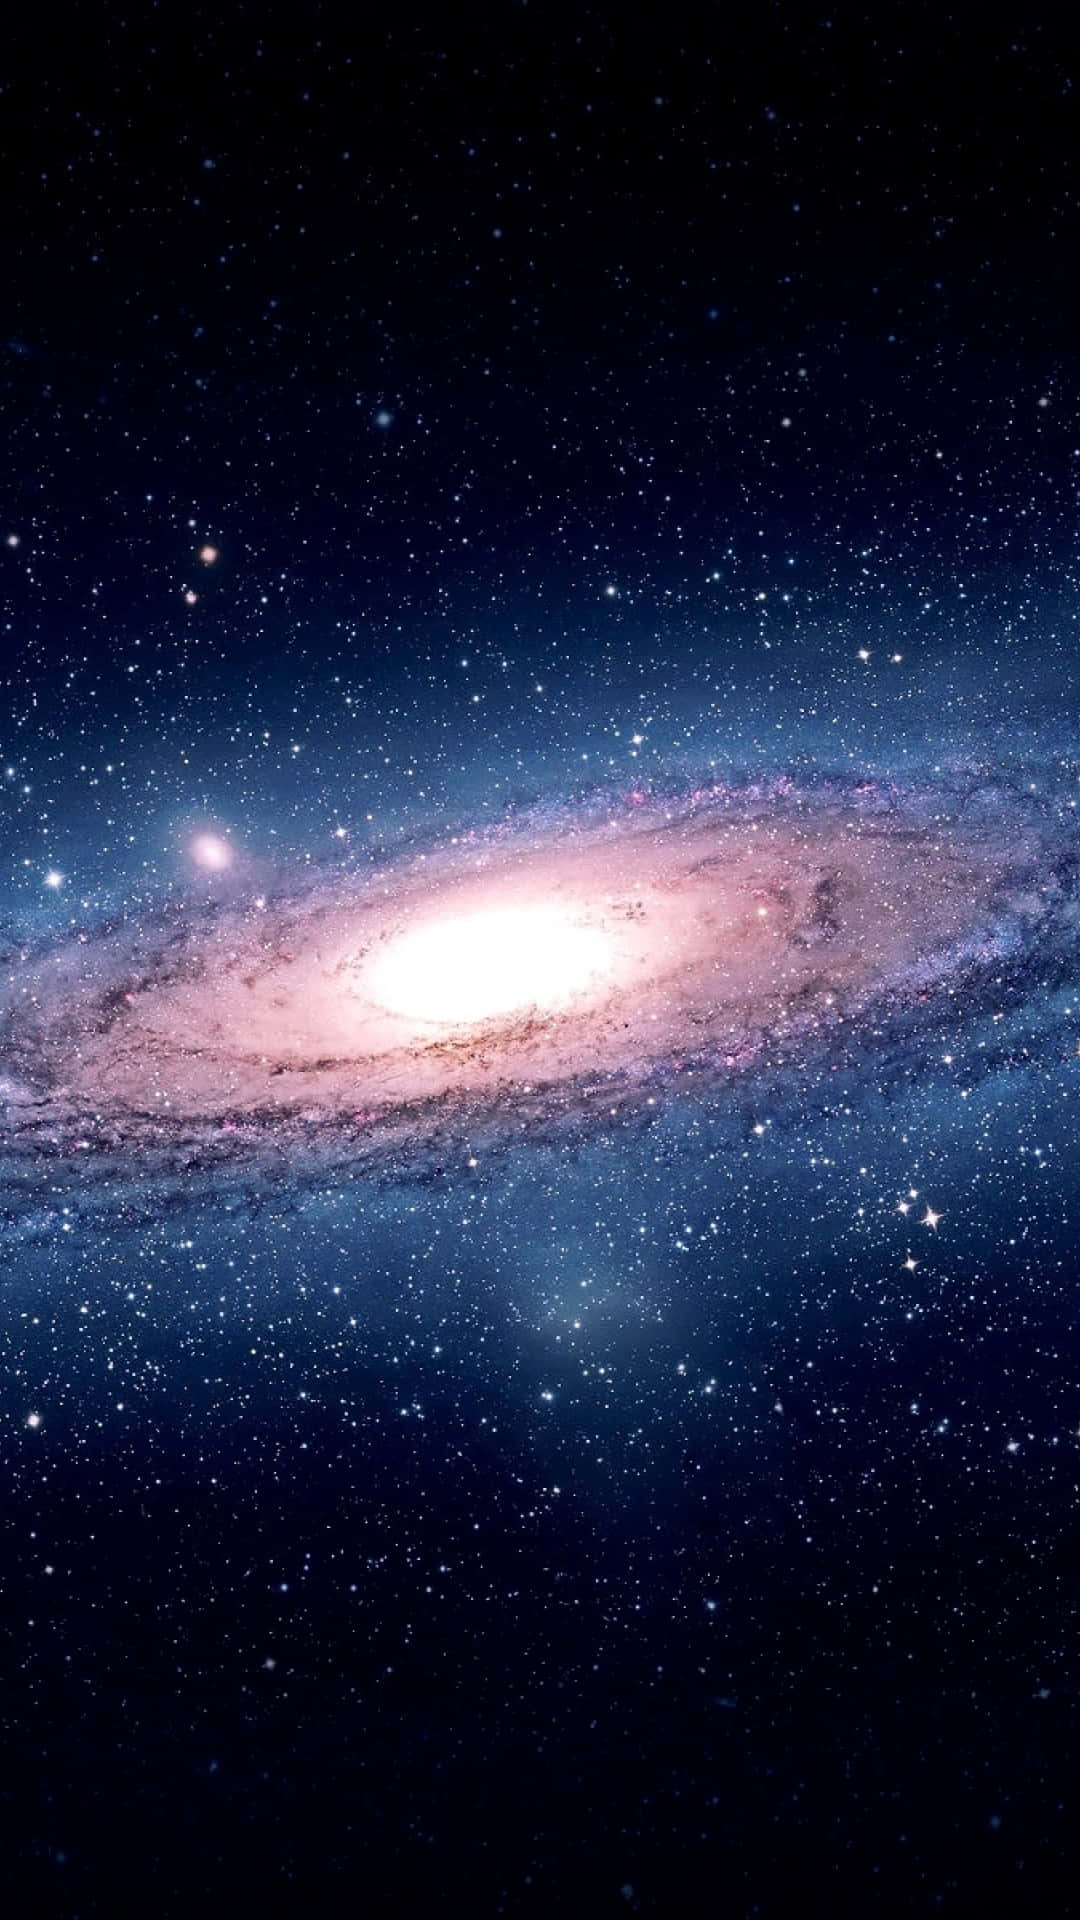 Explorea Majestade Da Galáxia De Andrômeda Em 4k De Clareza Em Papéis De Parede De Computador Ou Celular. Papel de Parede